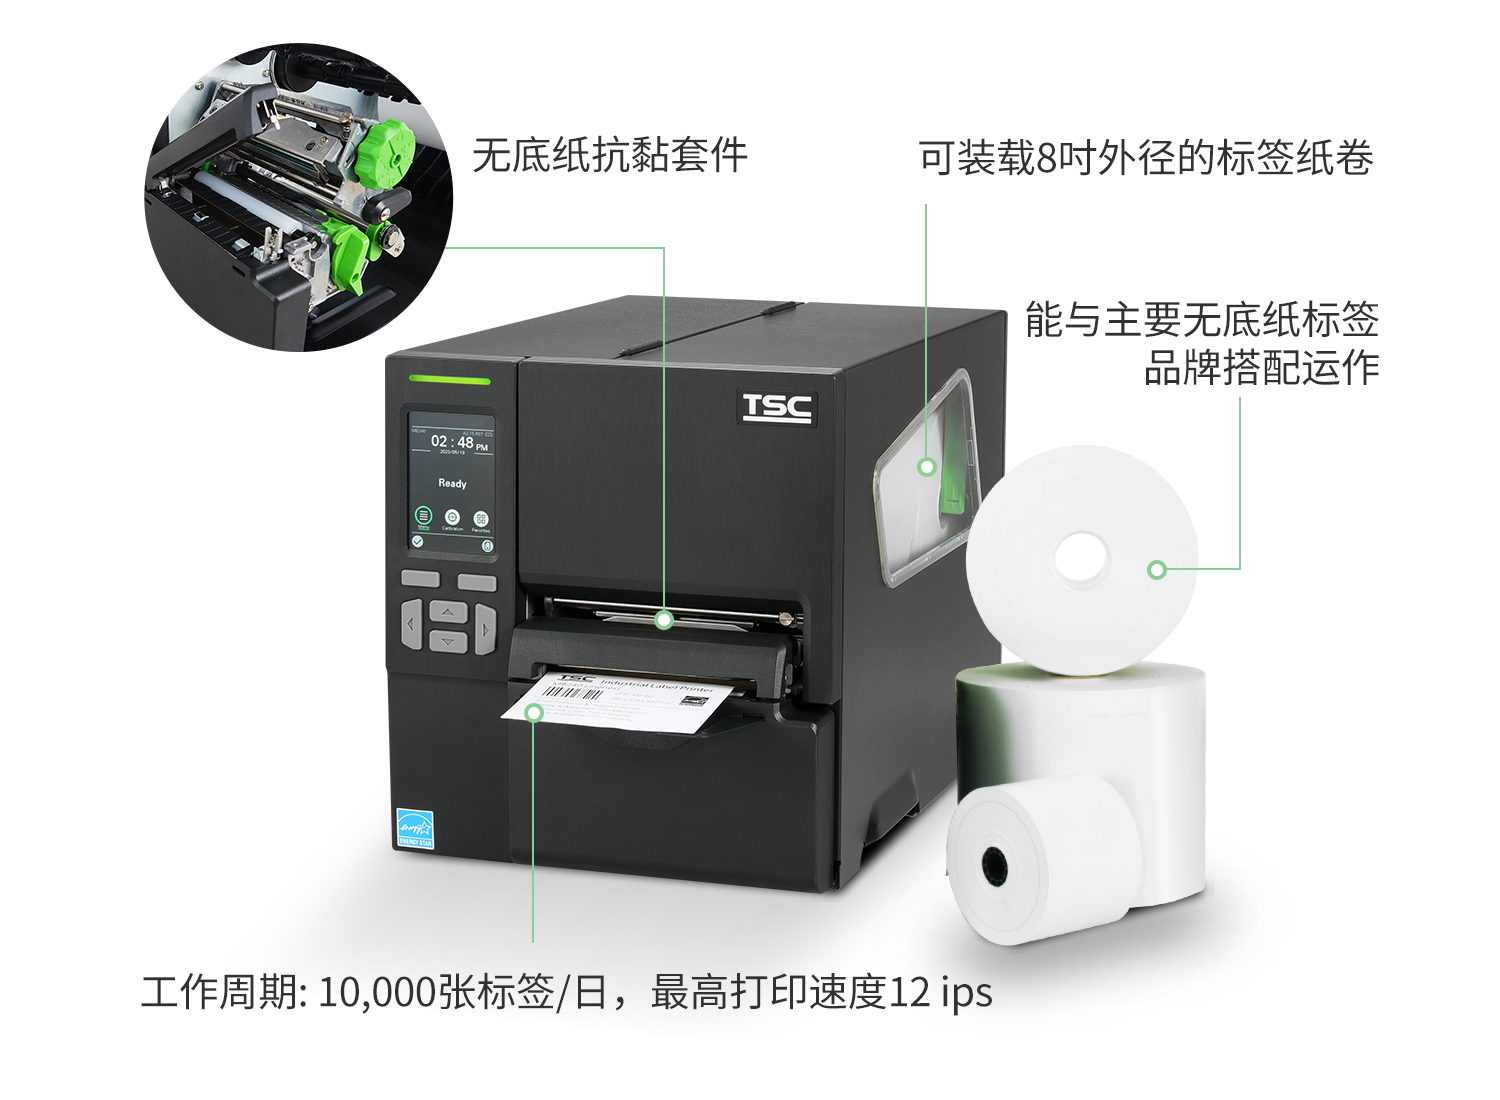 四個選擇 MF2400 工業型無底紙打印機的理由